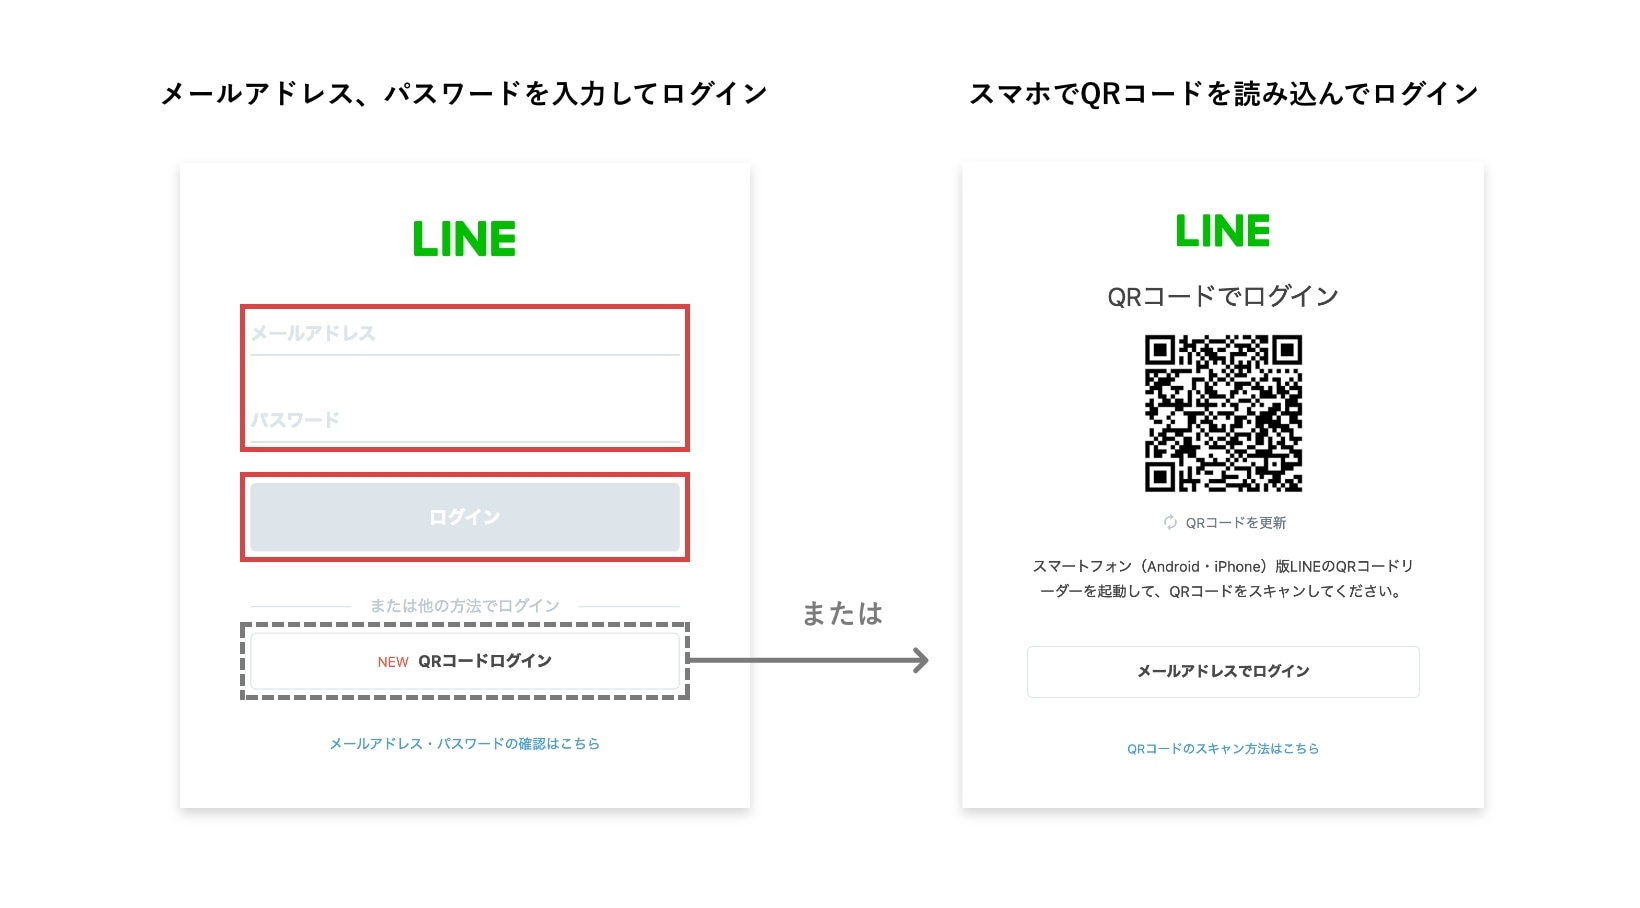 LINEアプリに遷移>LINEログイン画面にてログイン（LINEログイン済みの場合❹に移動）